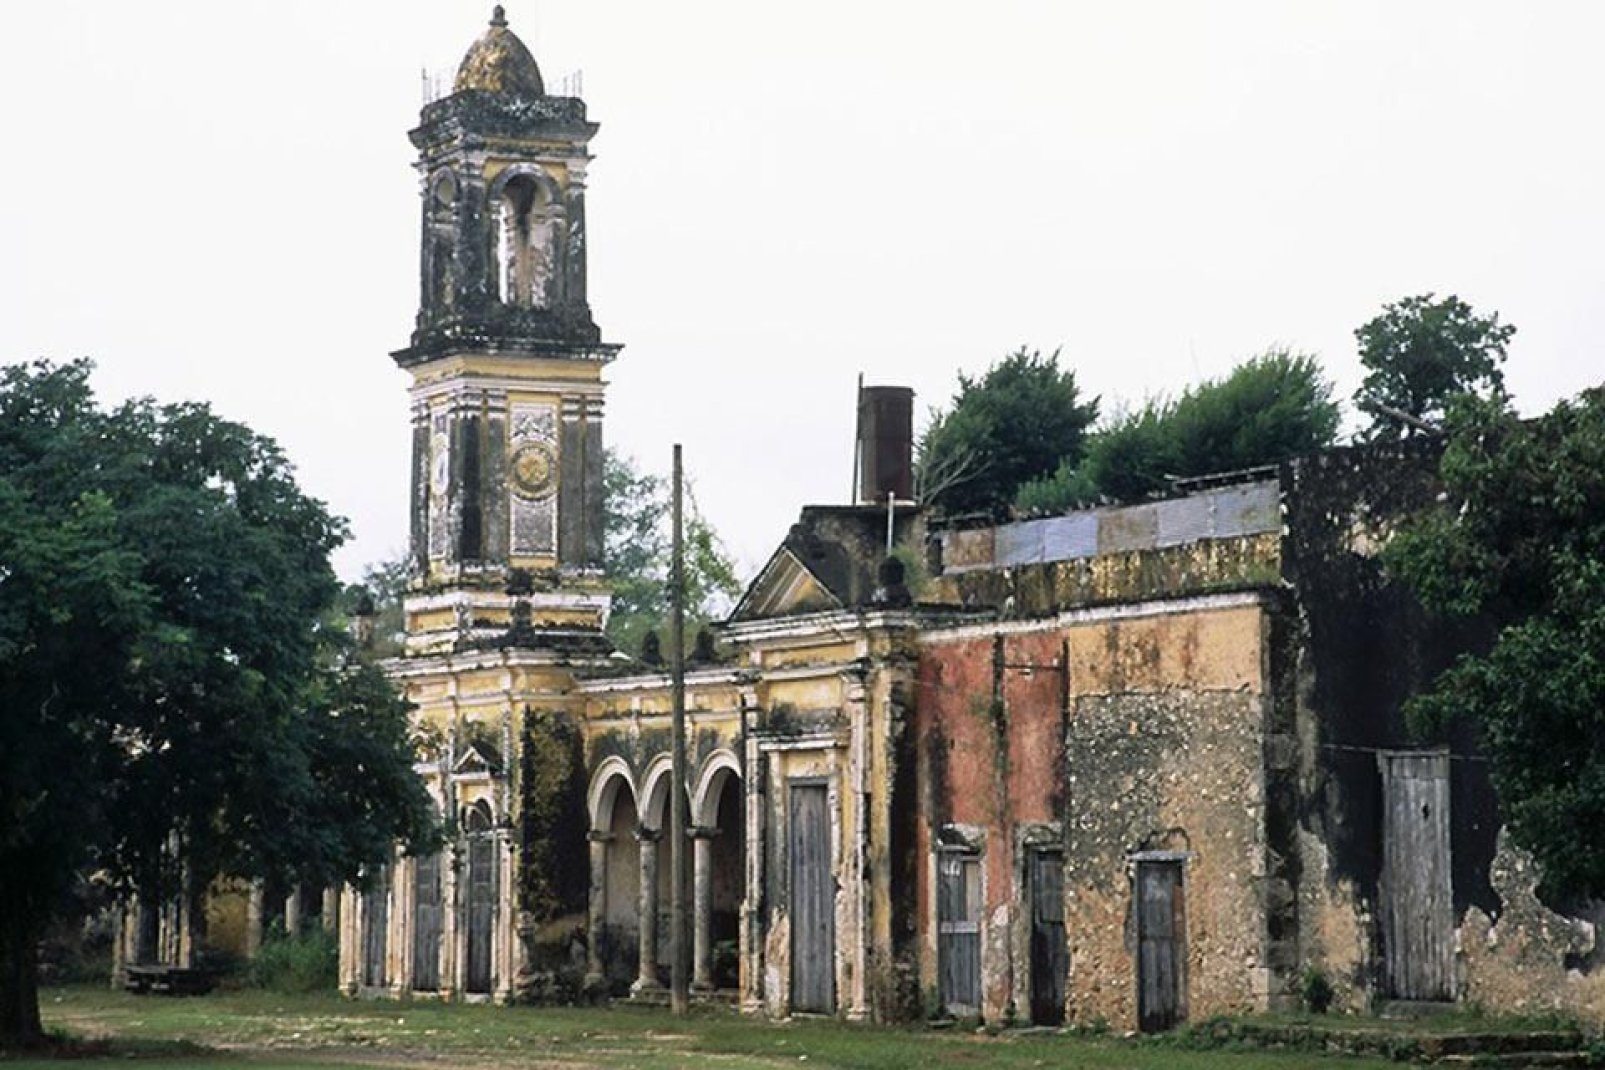 Una delle prime chiese edificate nella zona ad opera dei missionari gesuiti, dopo la conquista spagnola.